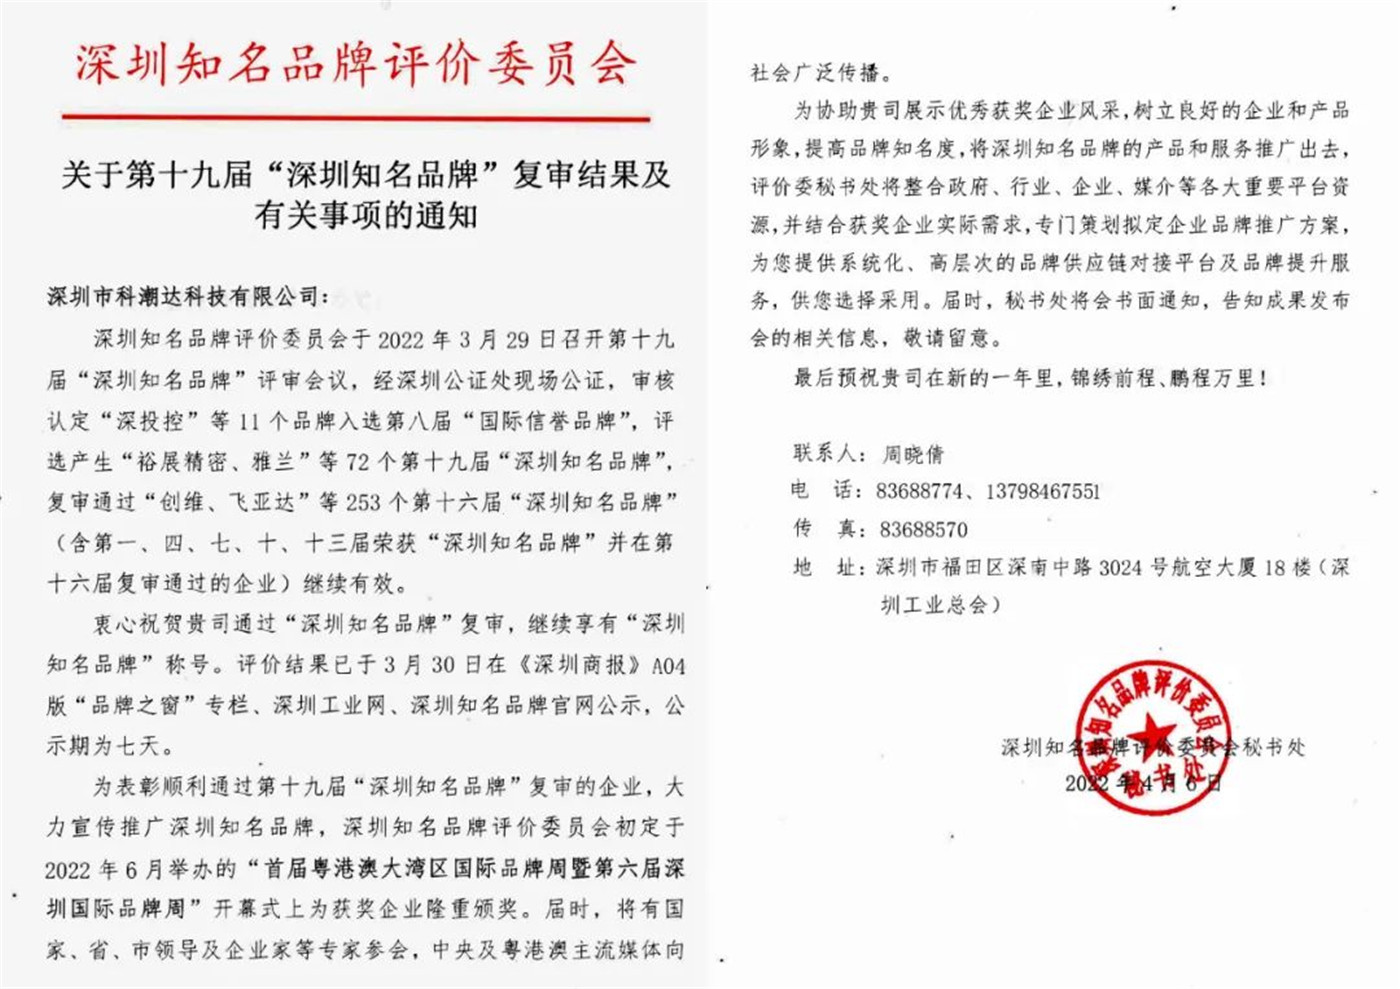 KECHAODA obitelji plima prolaza “Shenzhen poznatih robnih marki” pregled!